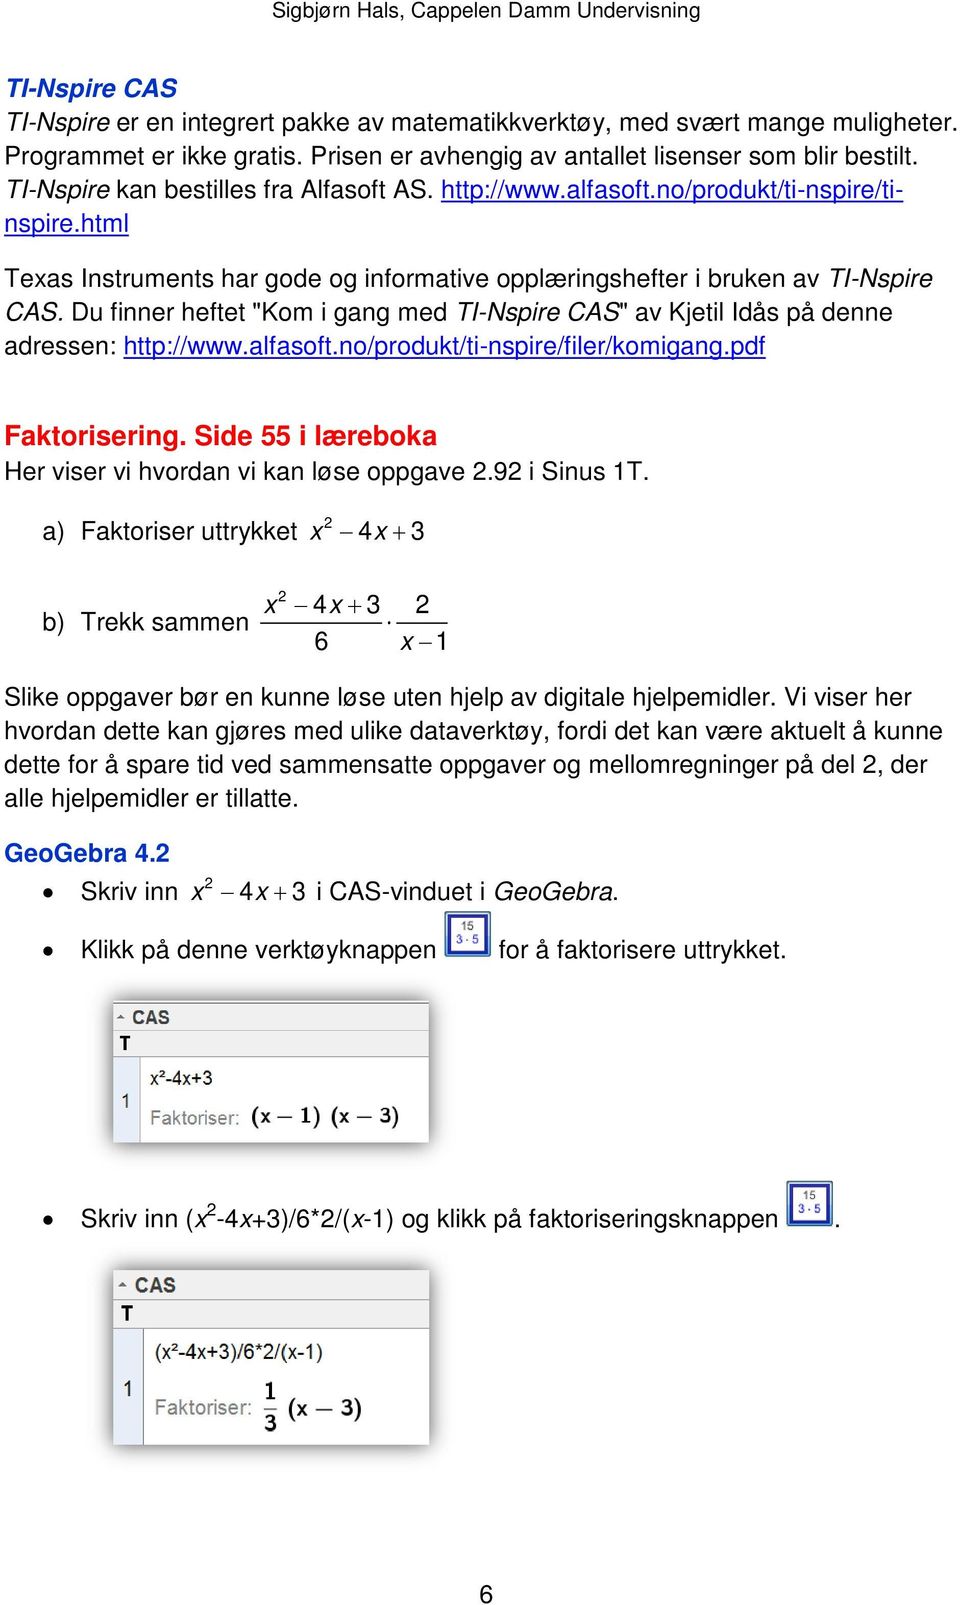 Du finner heftet "Kom i gang med TI-Nspire CAS" av Kjetil Idås på denne adressen: http://www.alfasoft.no/produkt/ti-nspire/filer/komigang.pdf Faktorisering.